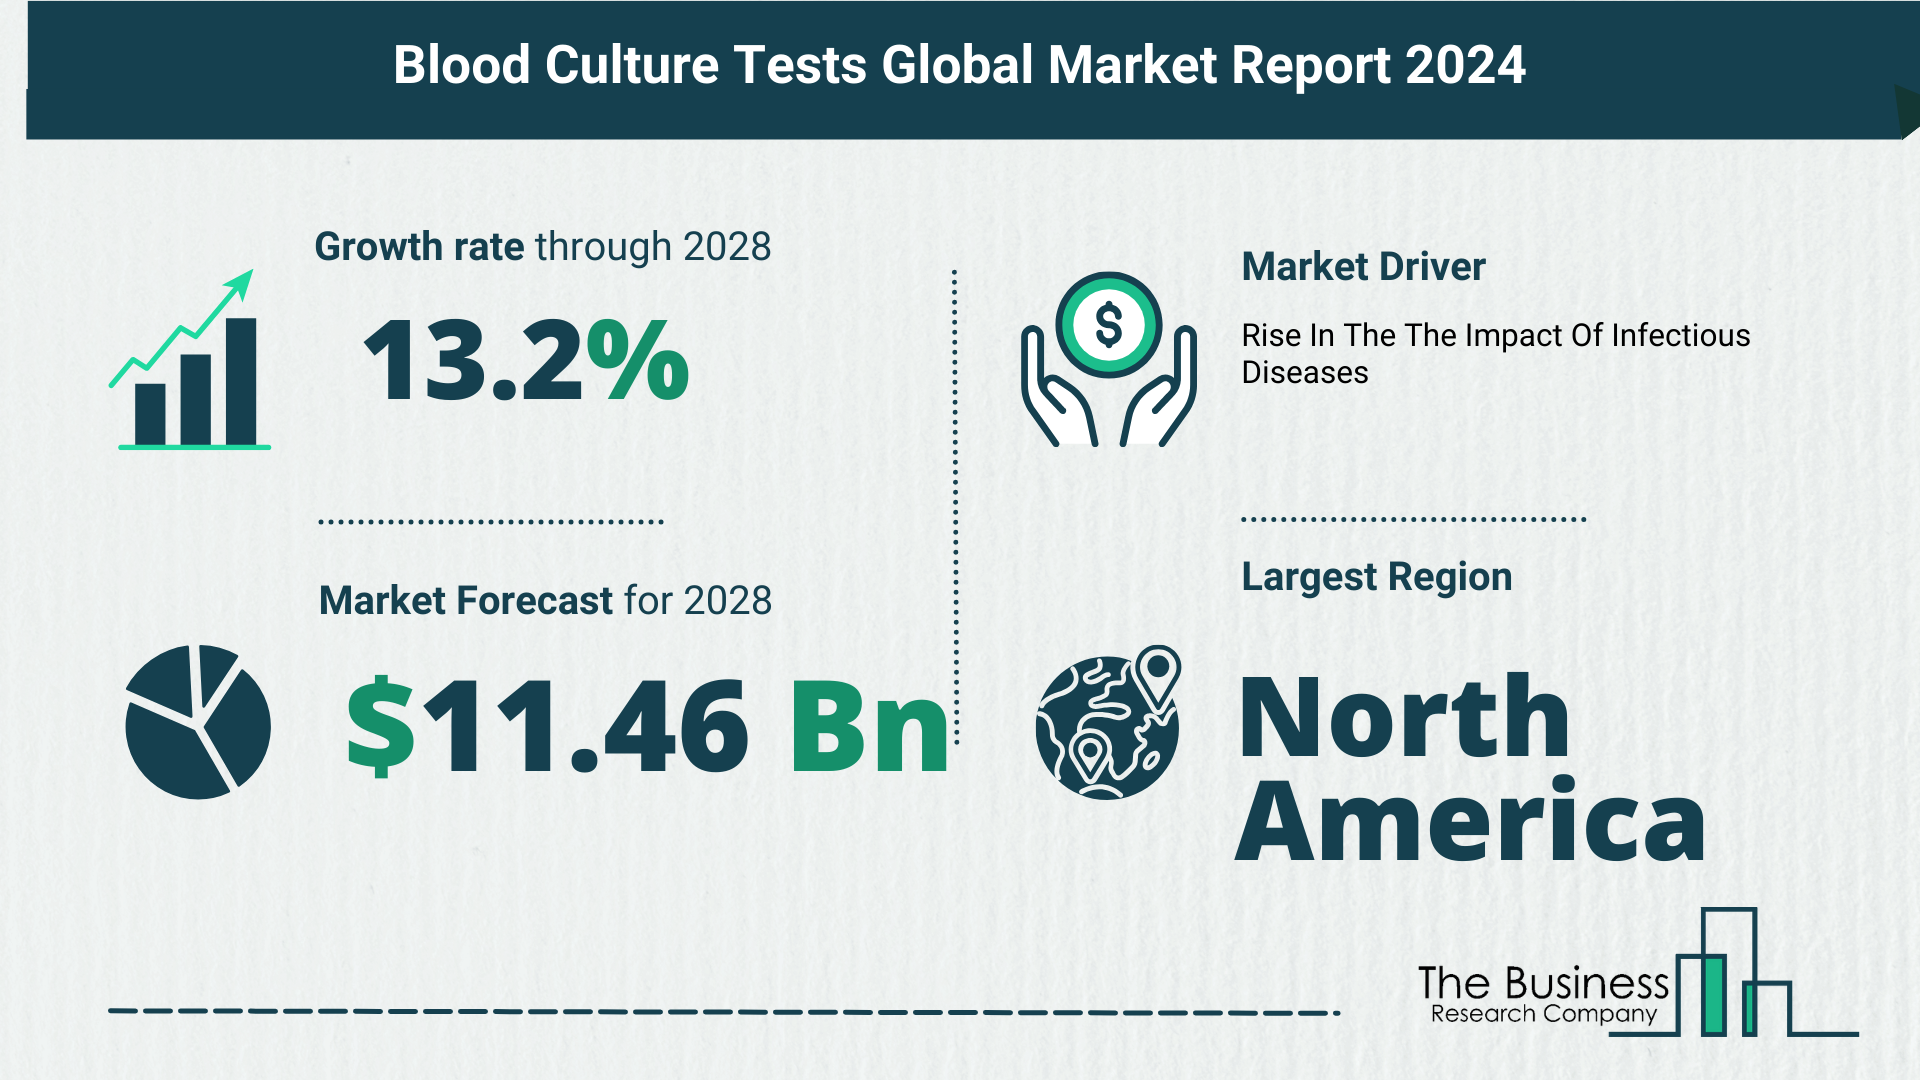 Global Blood Culture Tests Market